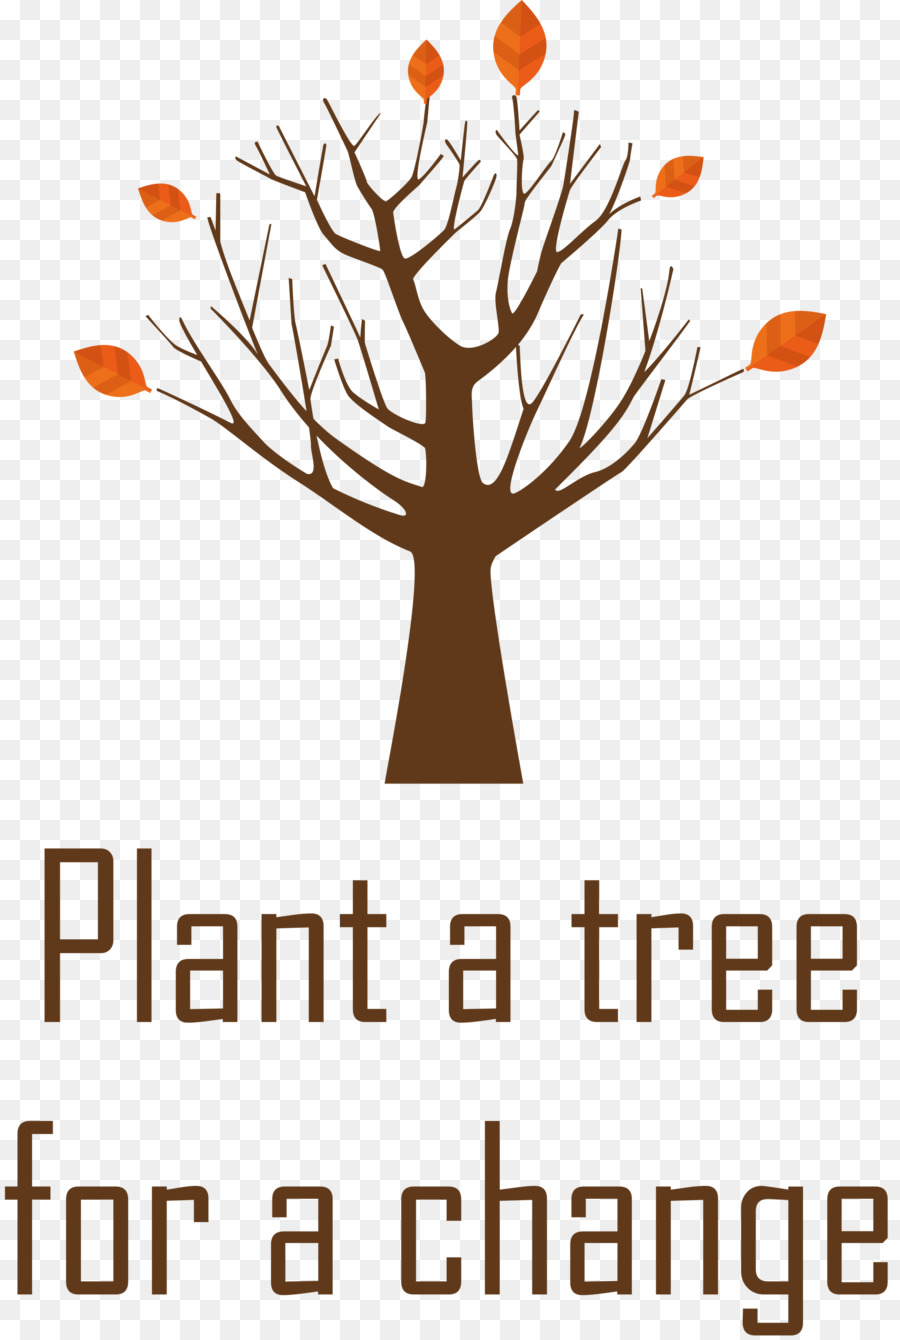 Pflanzen Sie einen Baum für einen Tag der Wechsellaube - 